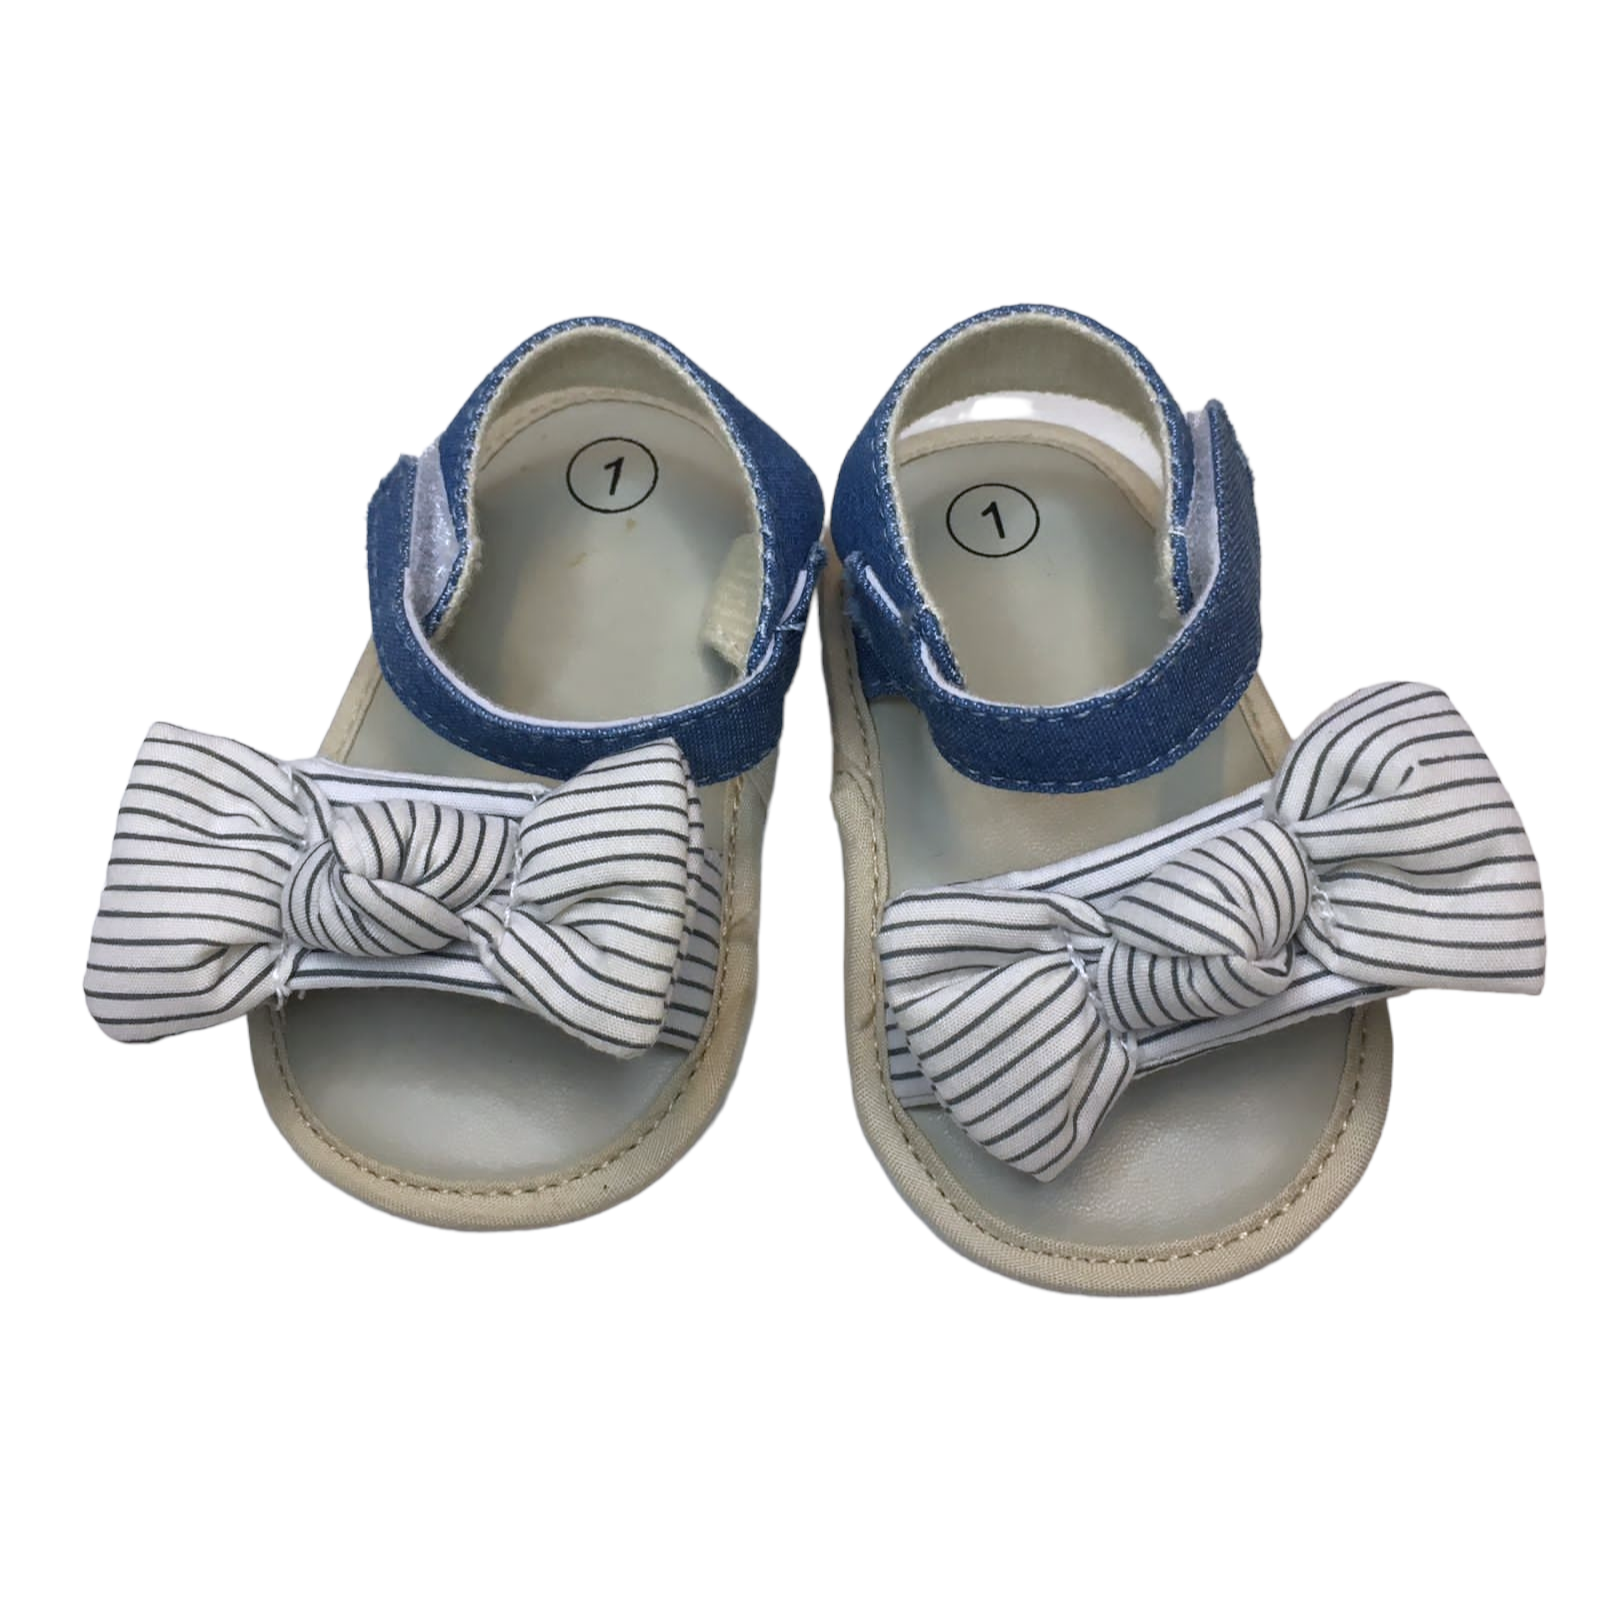 Sandalias azul y blanco con lazo y velcro